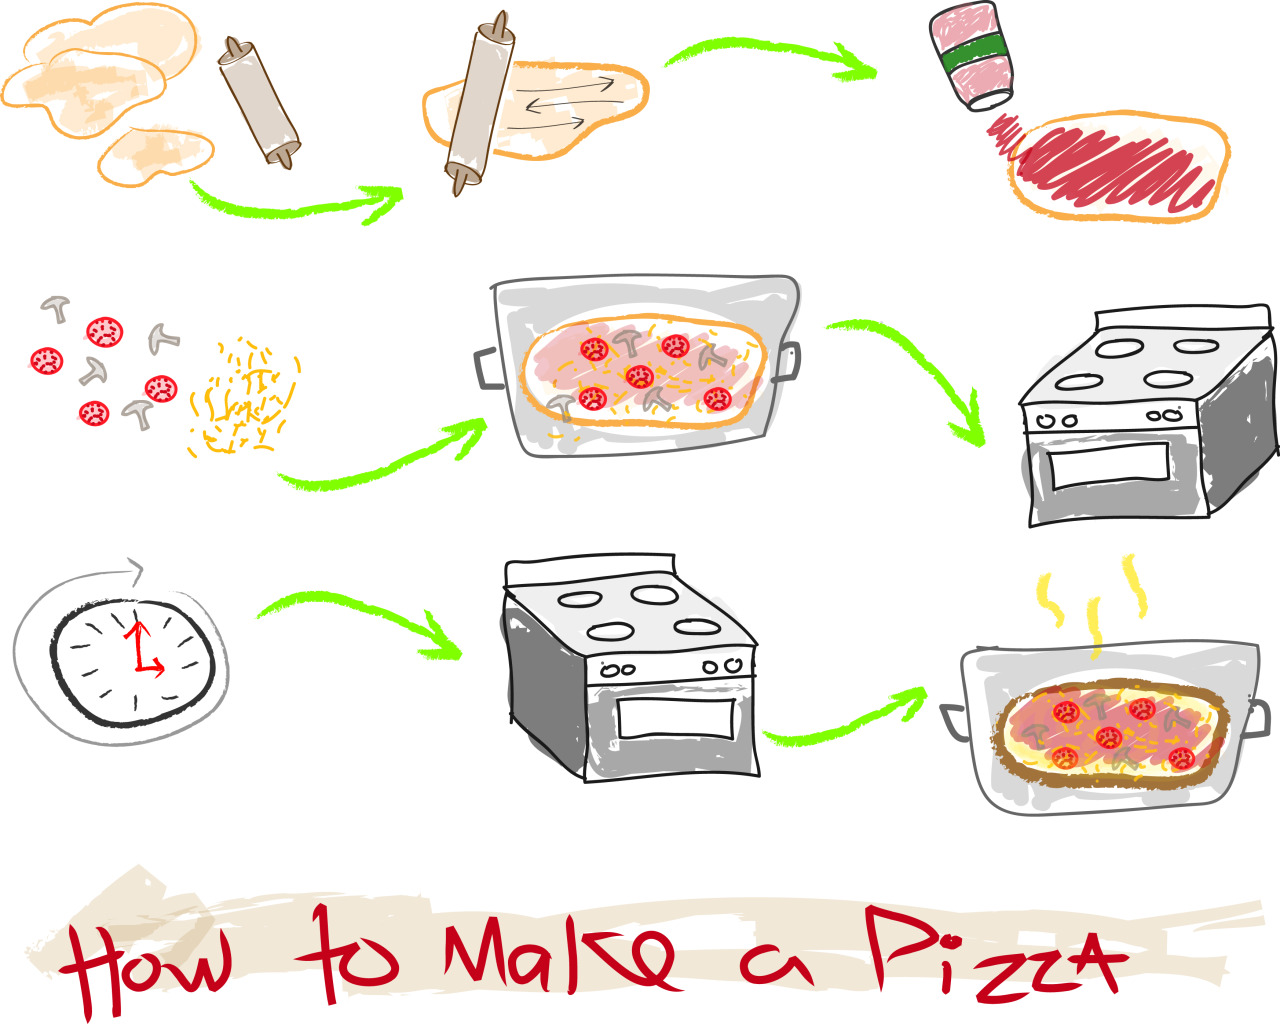 рецепт готовки пиццы на английском языке фото 21